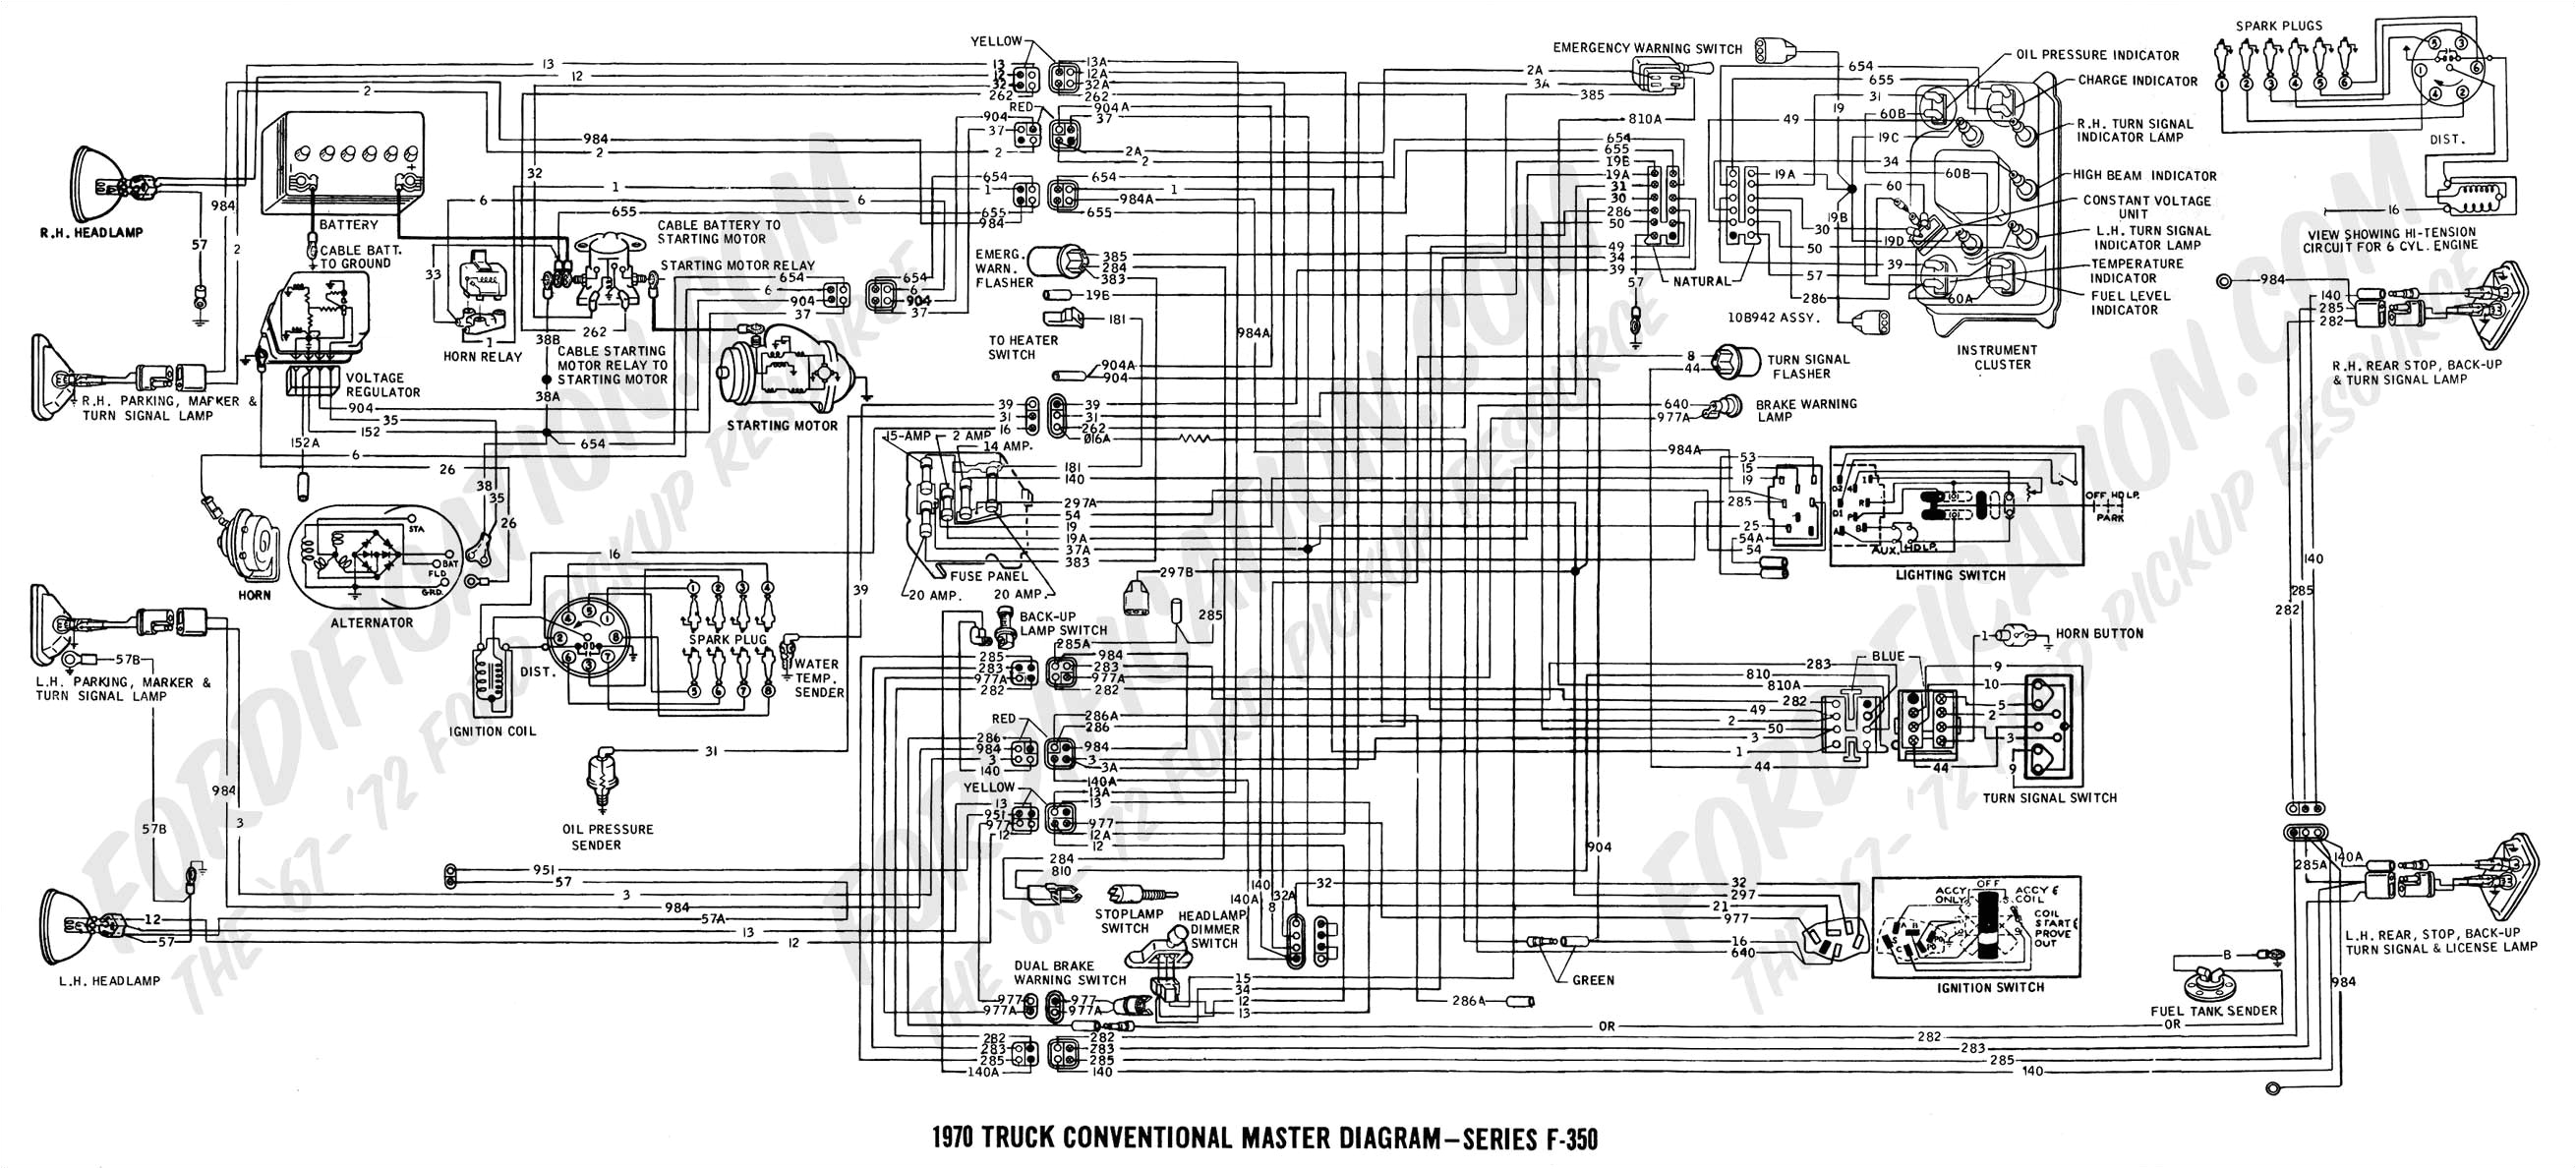 99 kenworth wiring diagrams